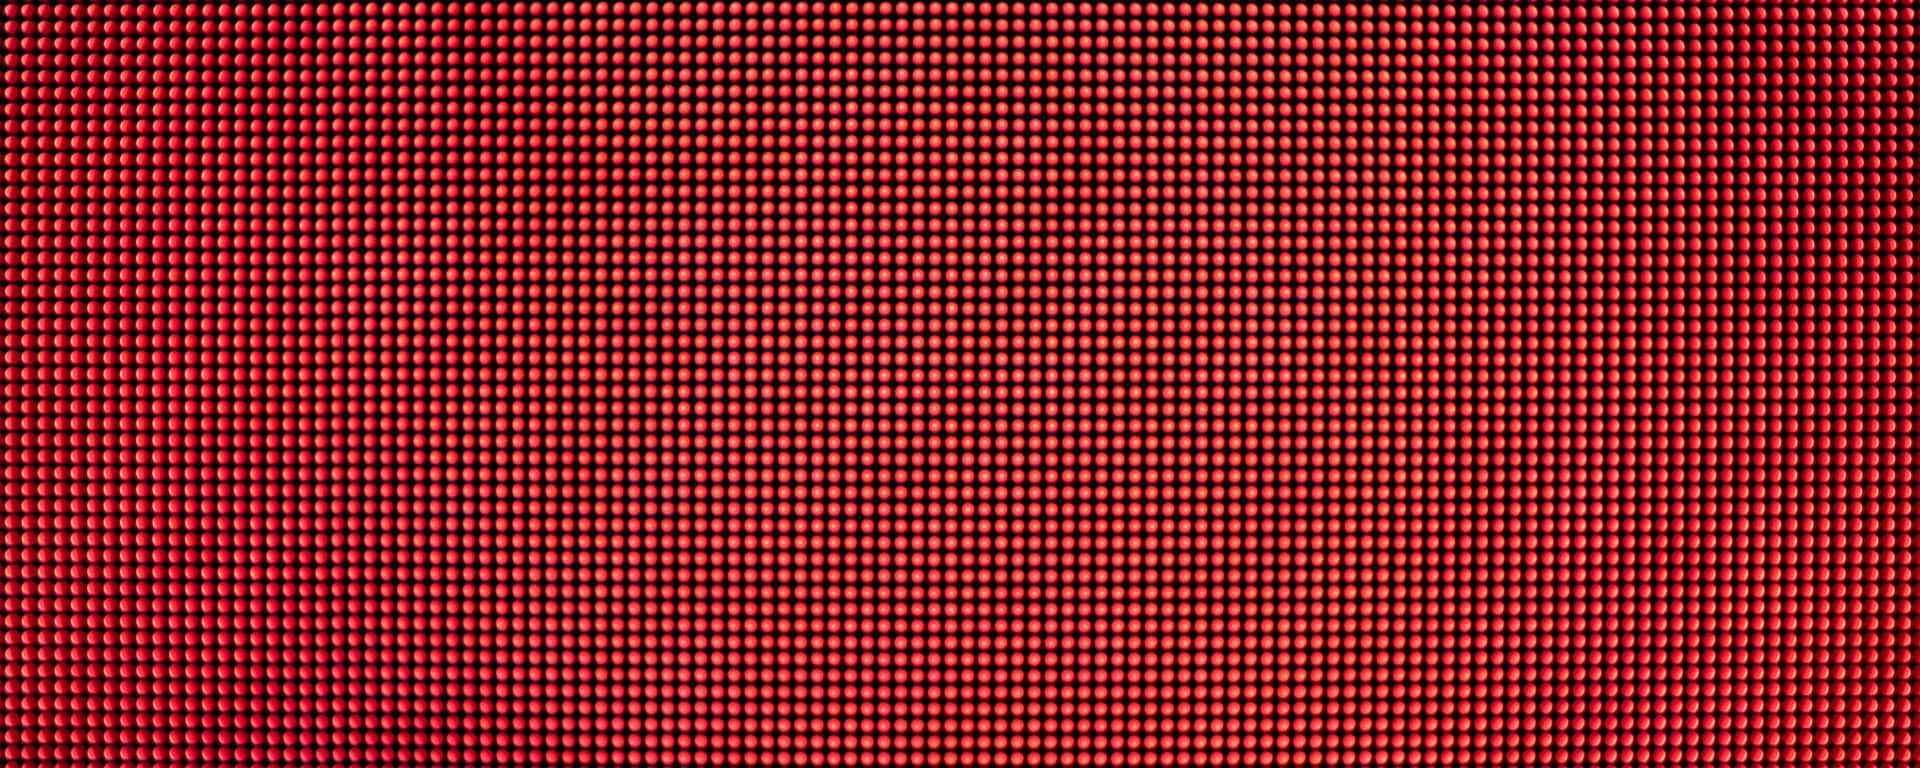 Punkteaus Roten Leds Ultra Wide Hd Wallpaper